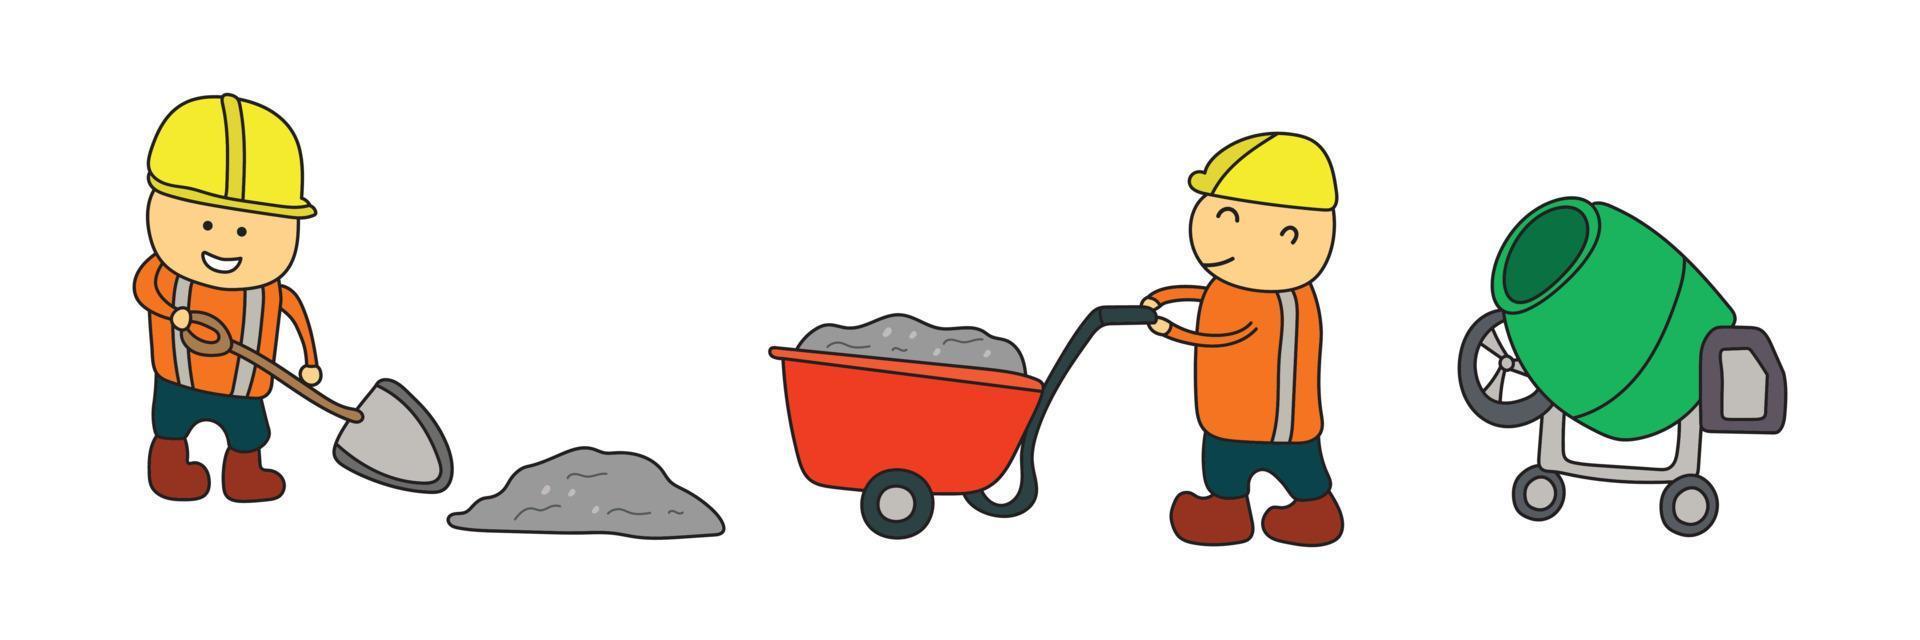 niños dibujando ilustraciones vectoriales de trabajadores de la construcción preparando hormigón con mezclador de cemento en un estilo de dibujos animados vector